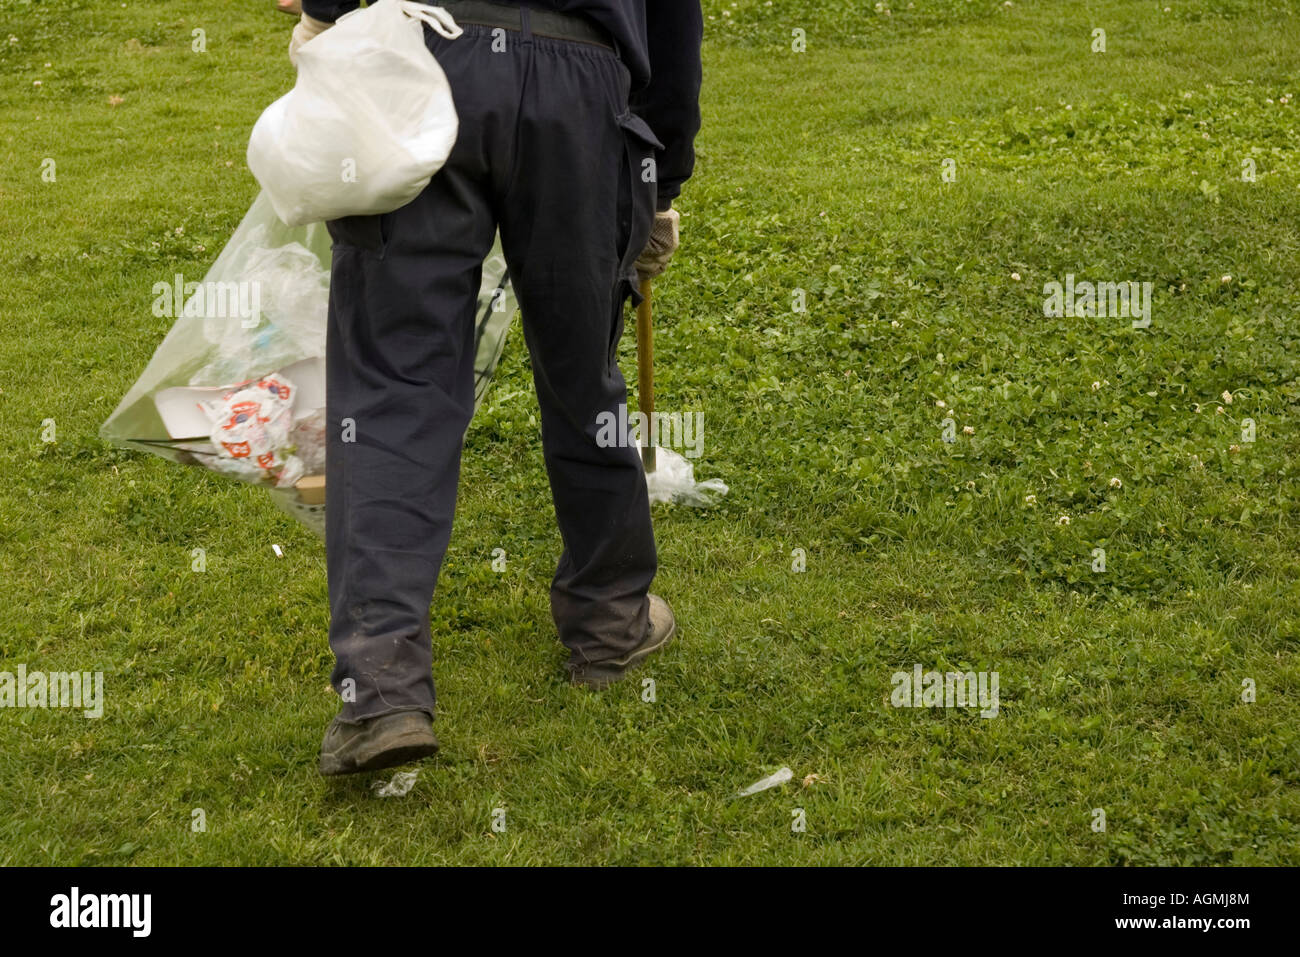 Israël Tel Aviv employé du parc la collecte des déchets à l'aide d'un bâton pointu Banque D'Images